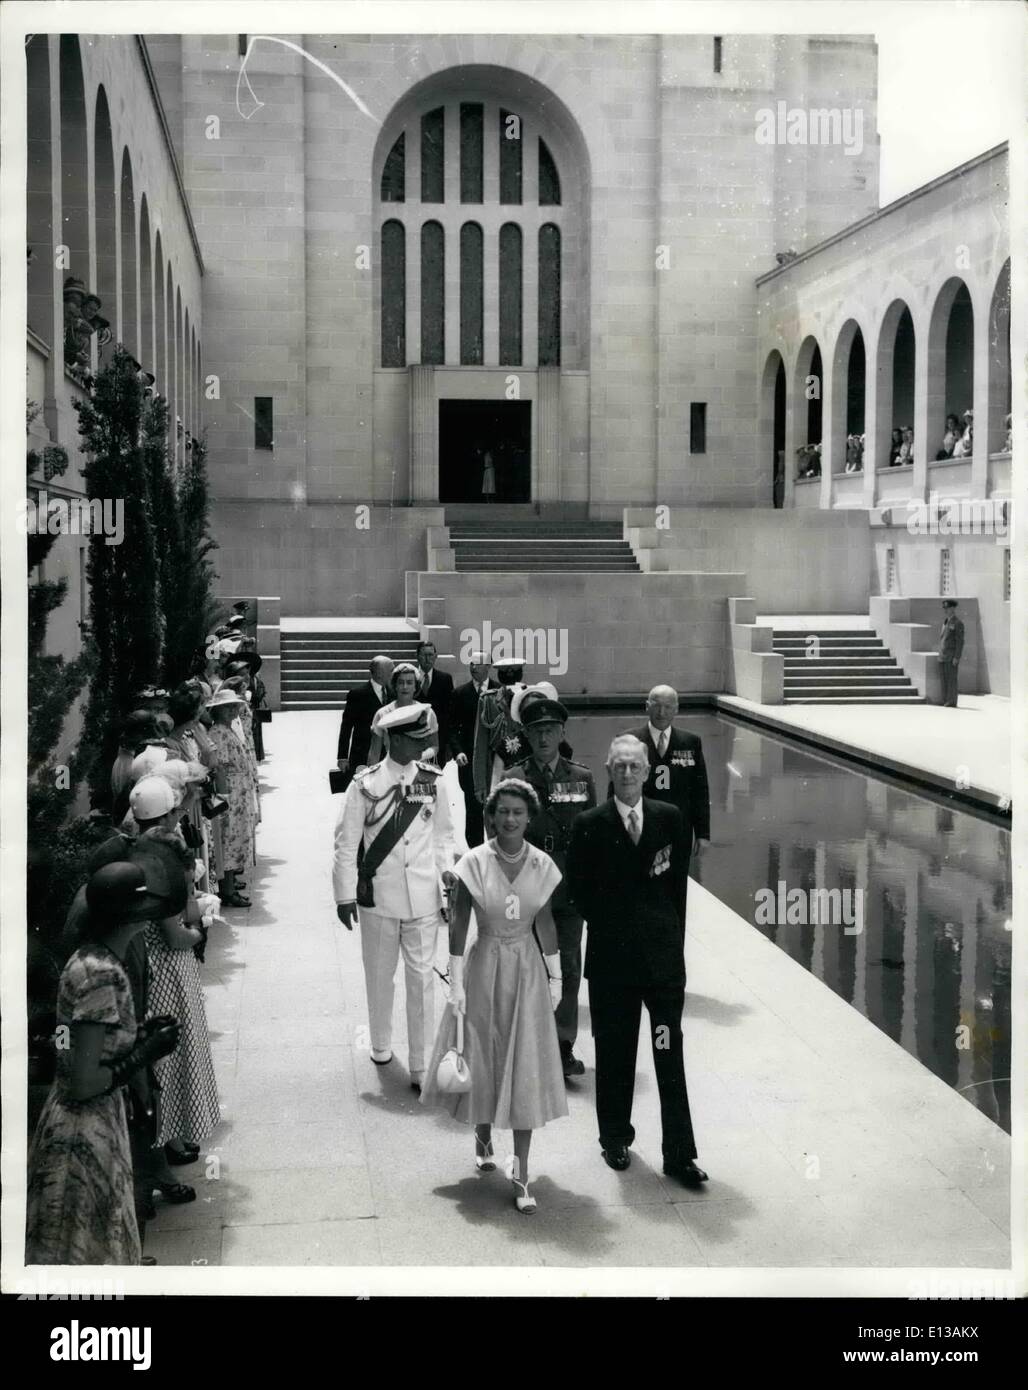 29 février 2012 - La Reine à Canberra, Australie : Sa Majesté la Reine et le duc d'Édimbourg à marcher le long du couloir de la mémoire, au cours de leur visite à la mémorial national australien à Canberra. La piscine du souvenir est vu du côté droit. Banque D'Images